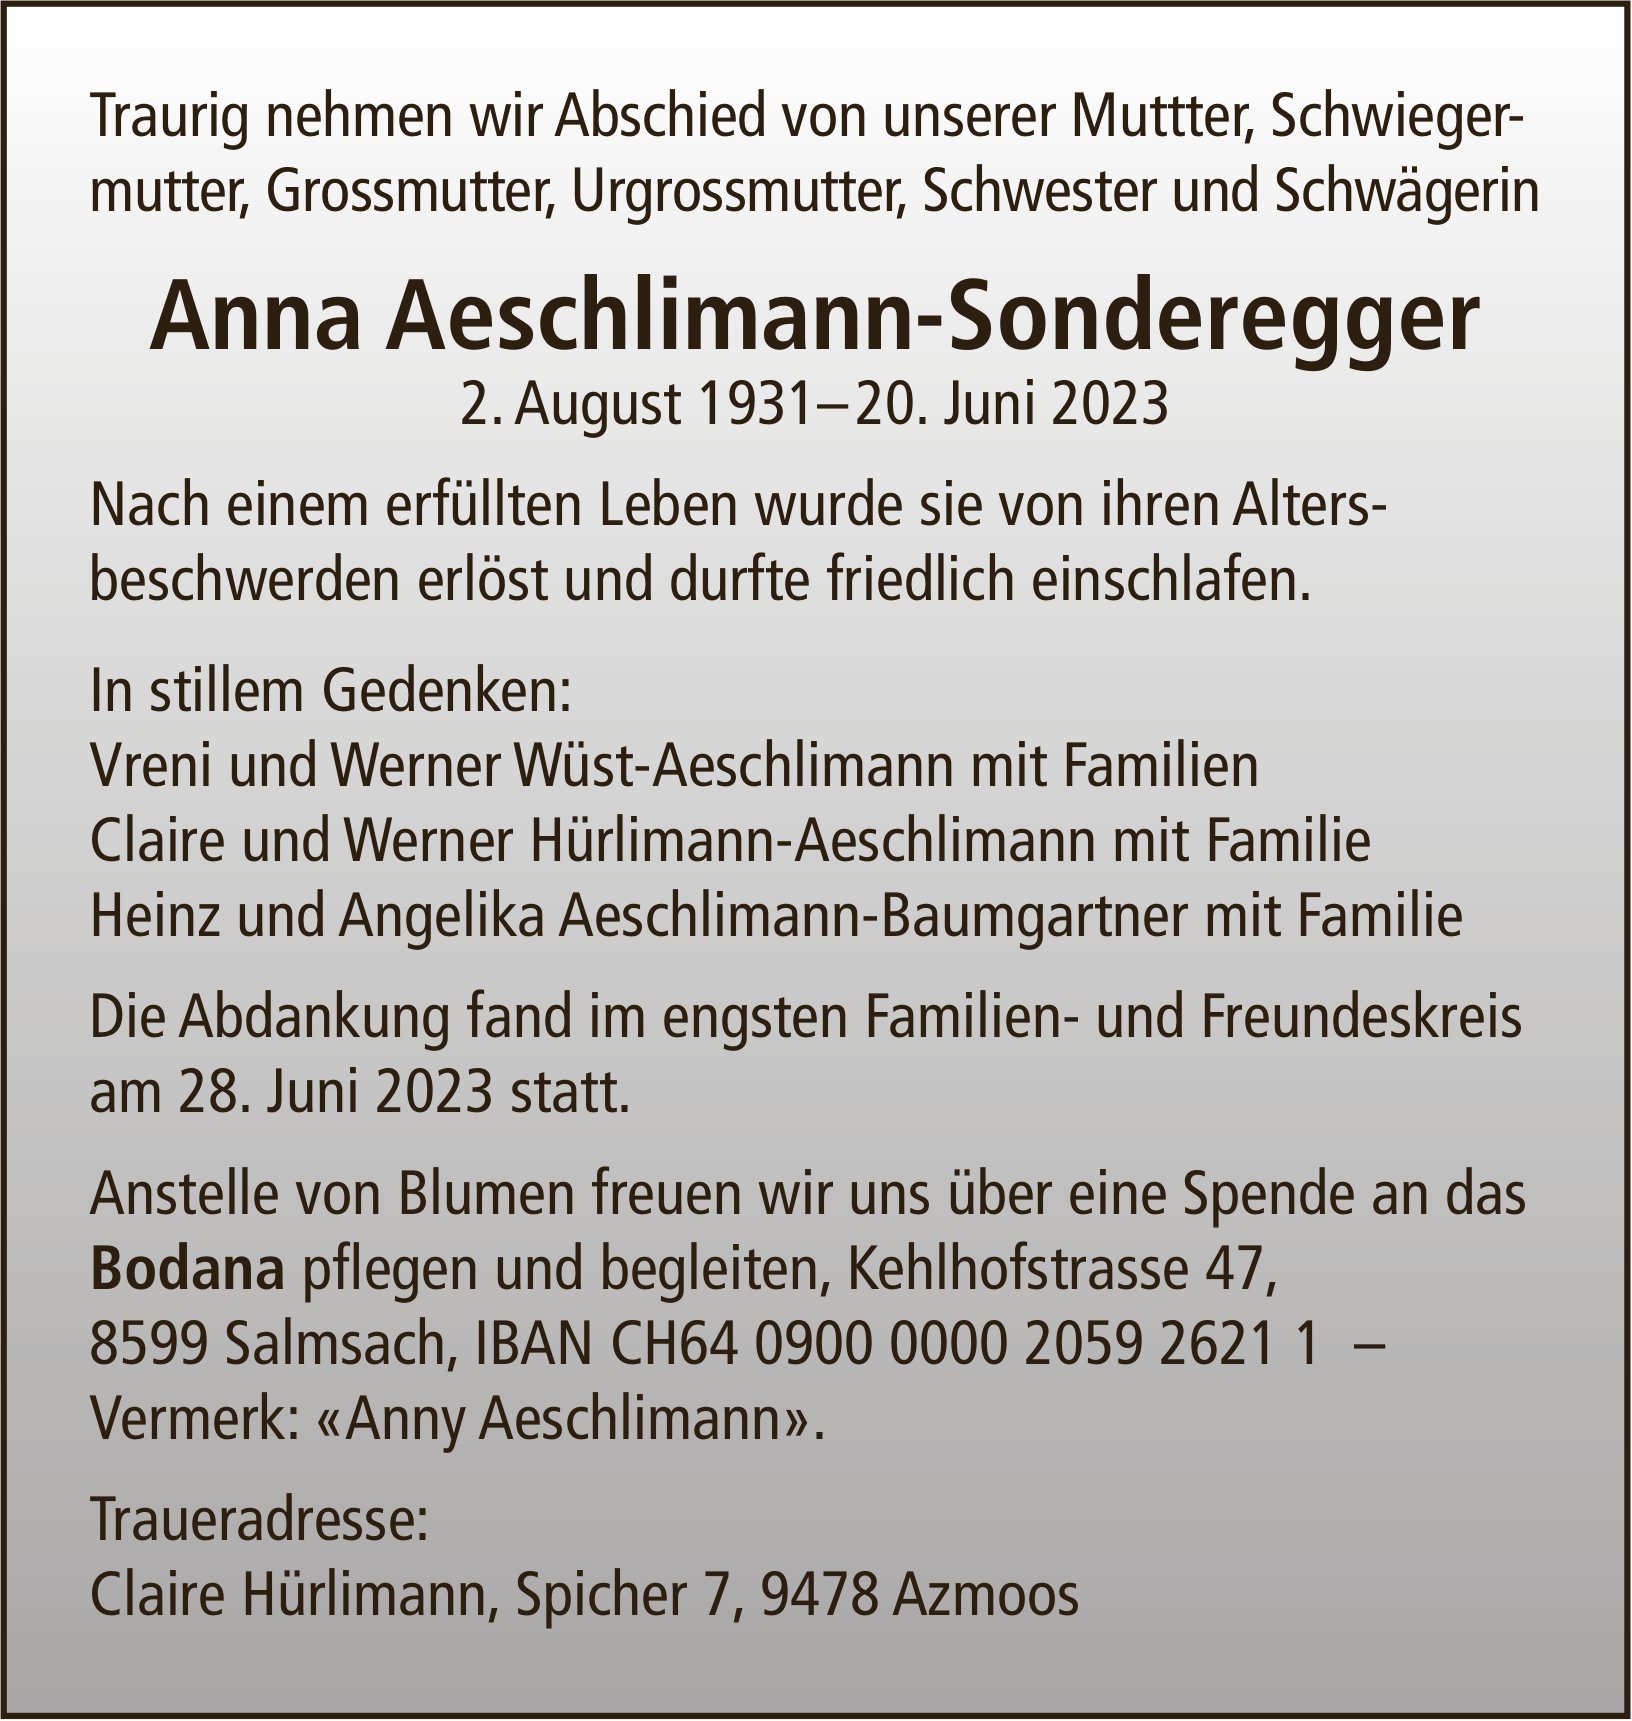 Aeschlimann-Sonderegger Anna, Juni 2023 / TA